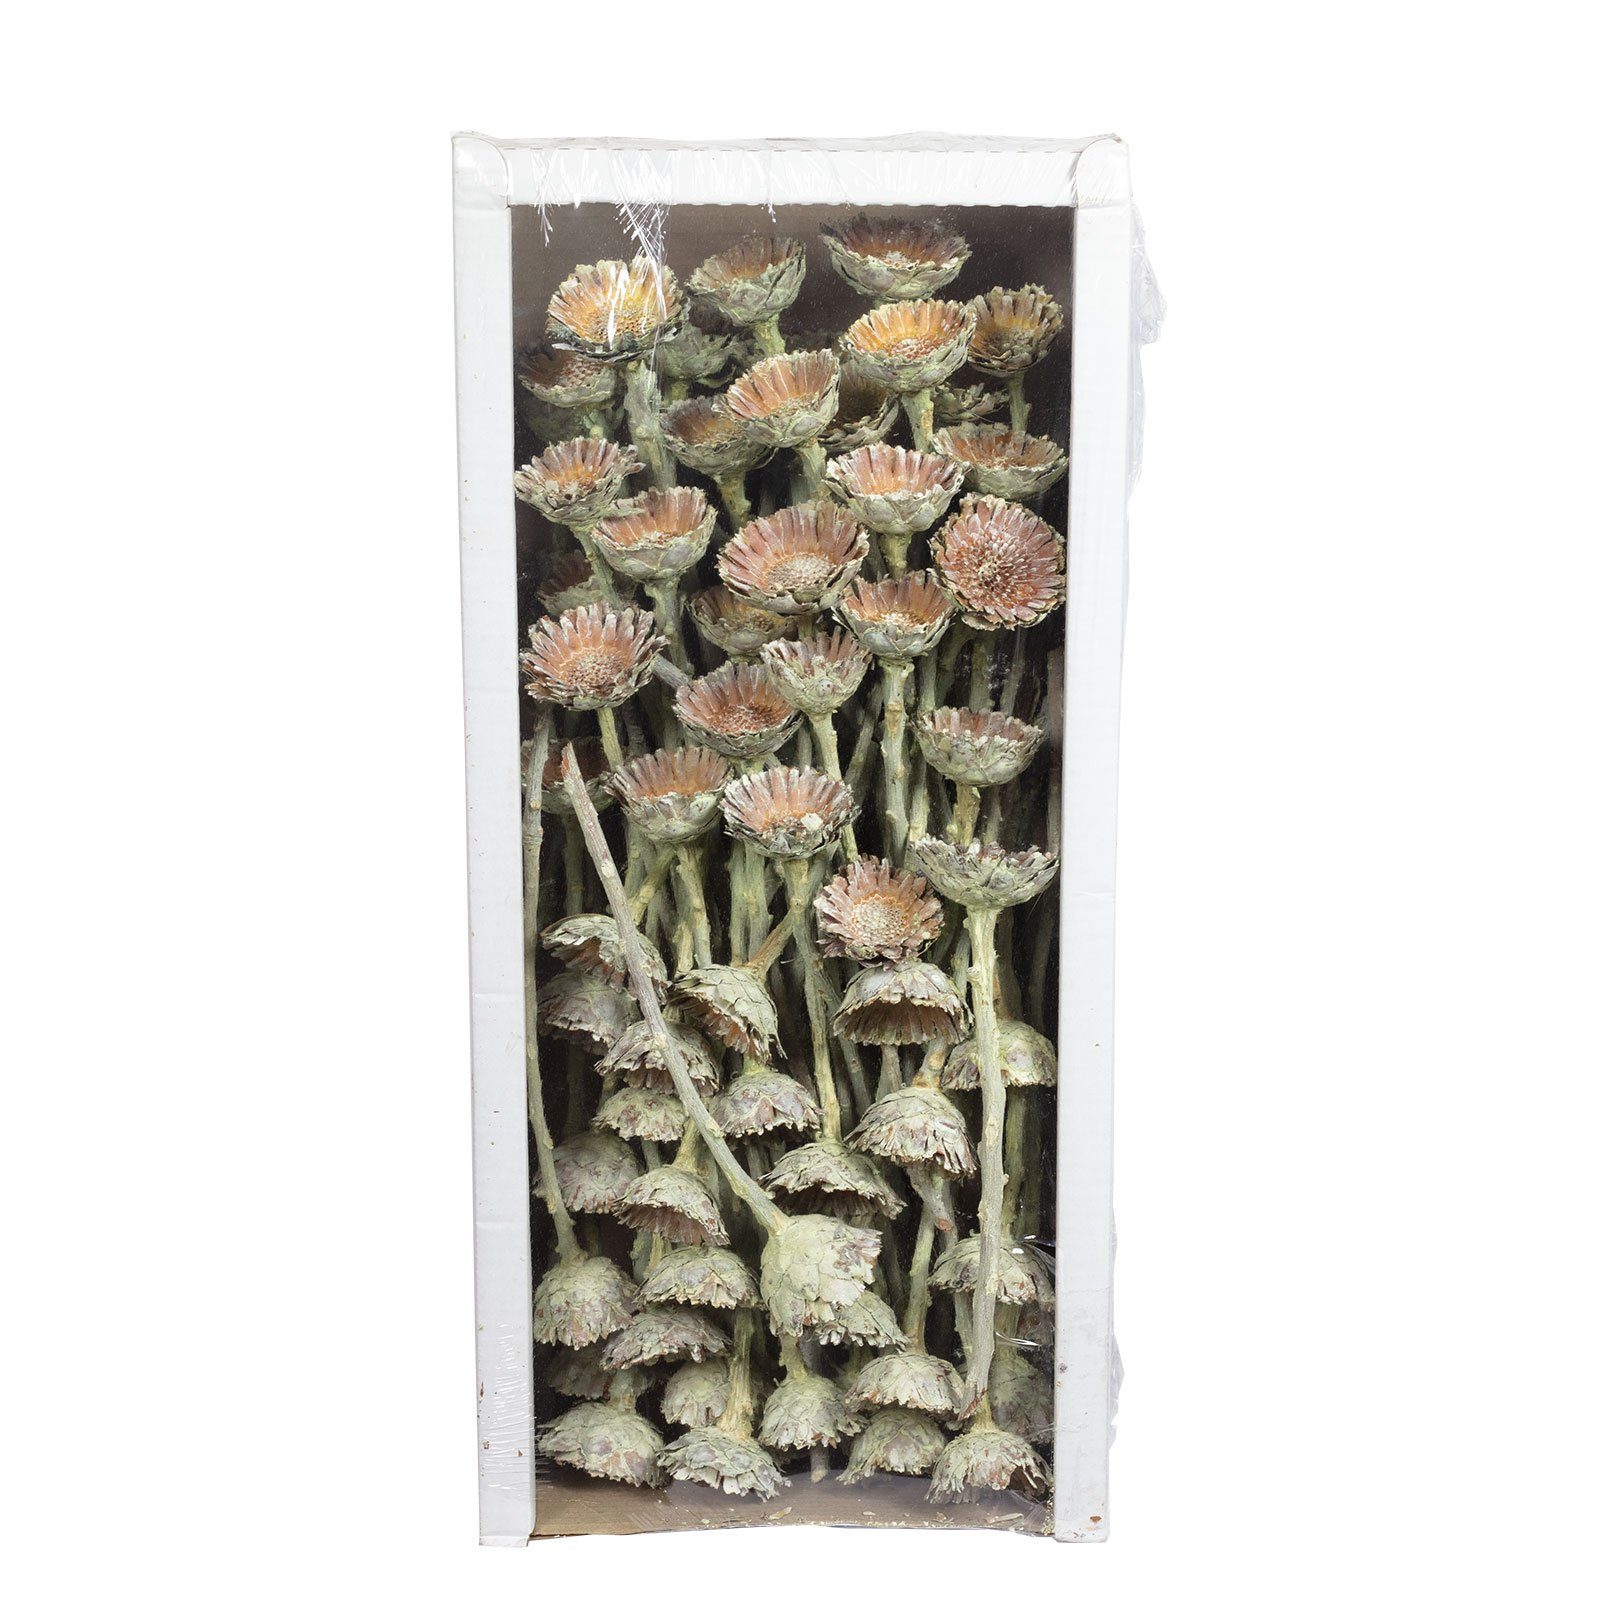 Compacta frost-grün, - 70 Rosette Stück - Vosteen Trockenblume Protea